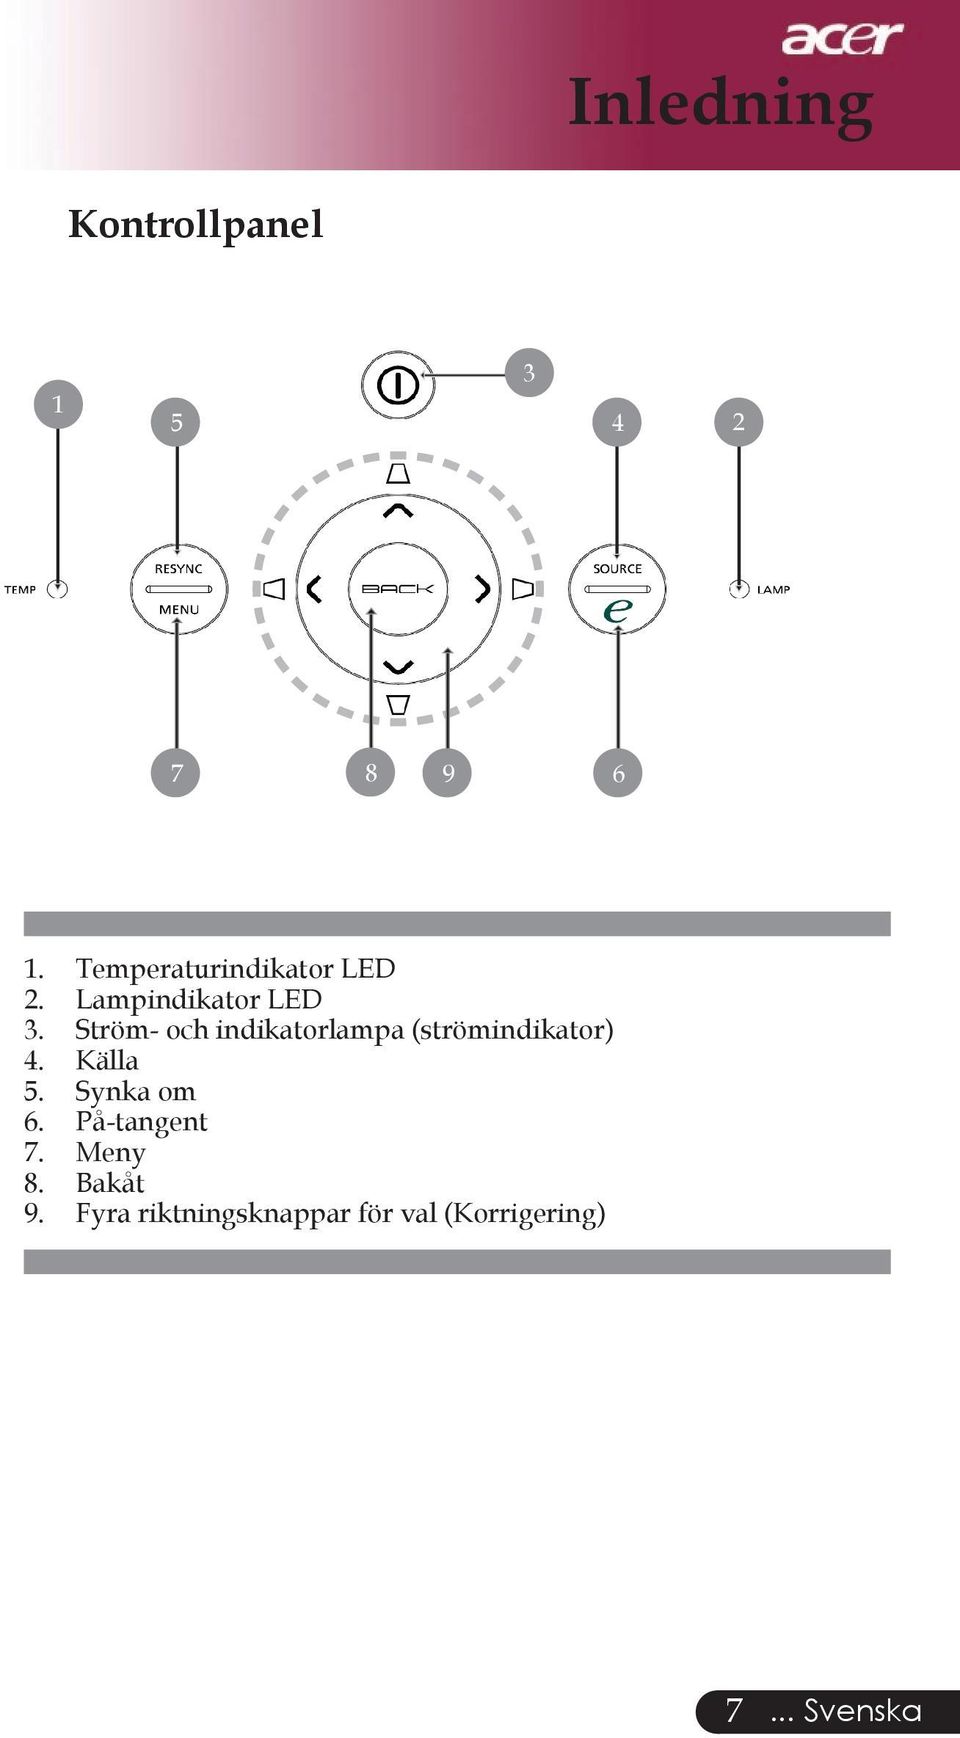 Ström- och indikatorlampa (strömindikator) 4. Källa 5.